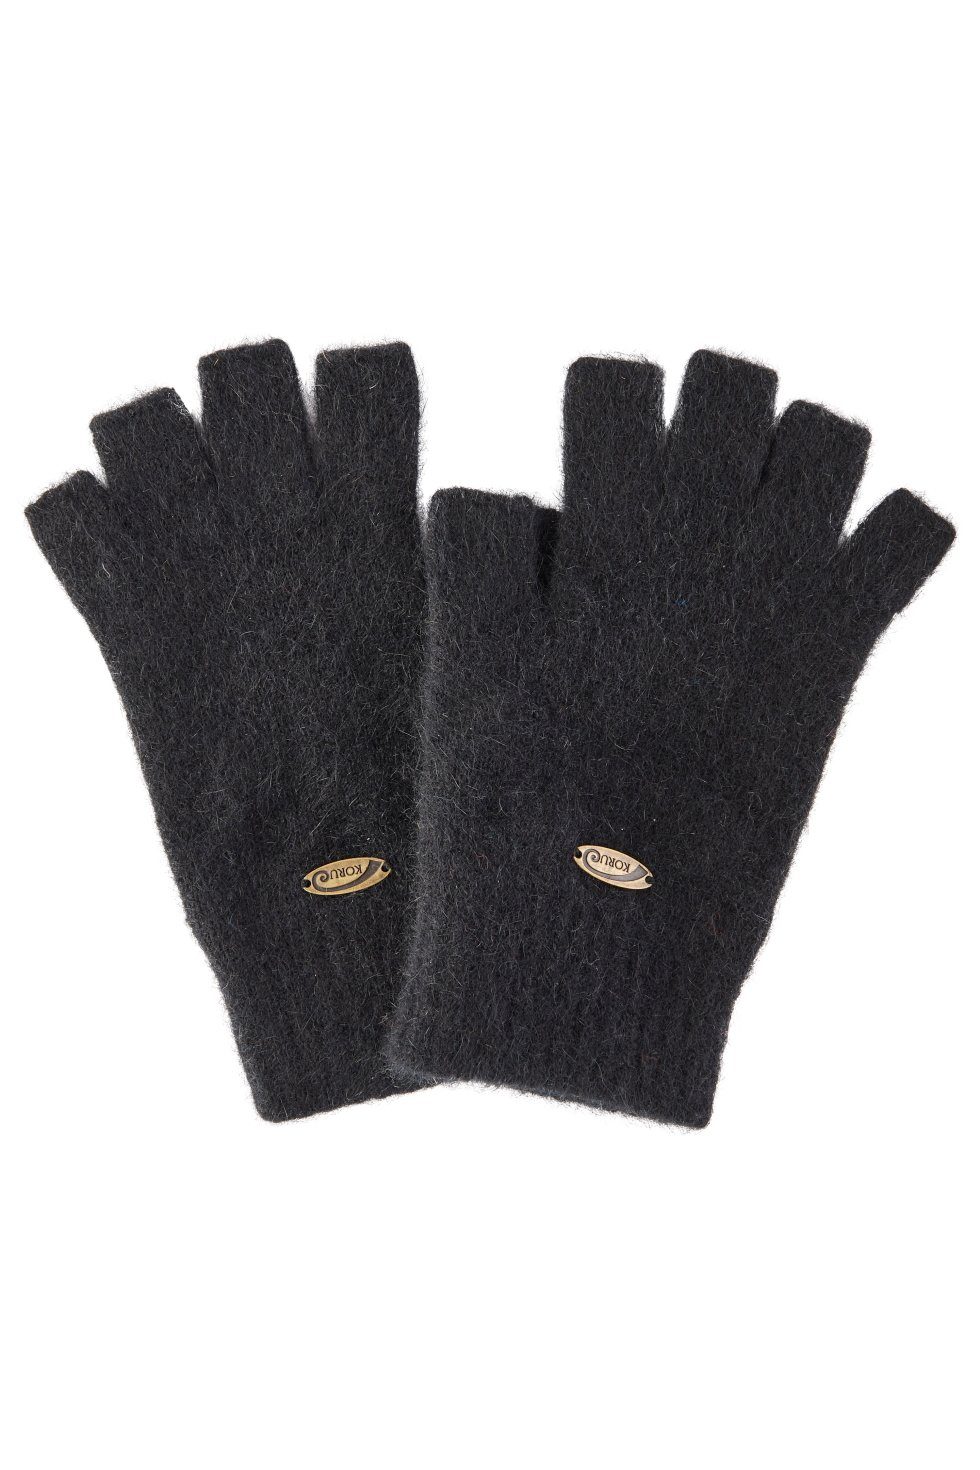 Koru Knitwear Strickhandschuhe Possum Merino Halbfinger Handschuhe aus der Possumhaarfaser grau